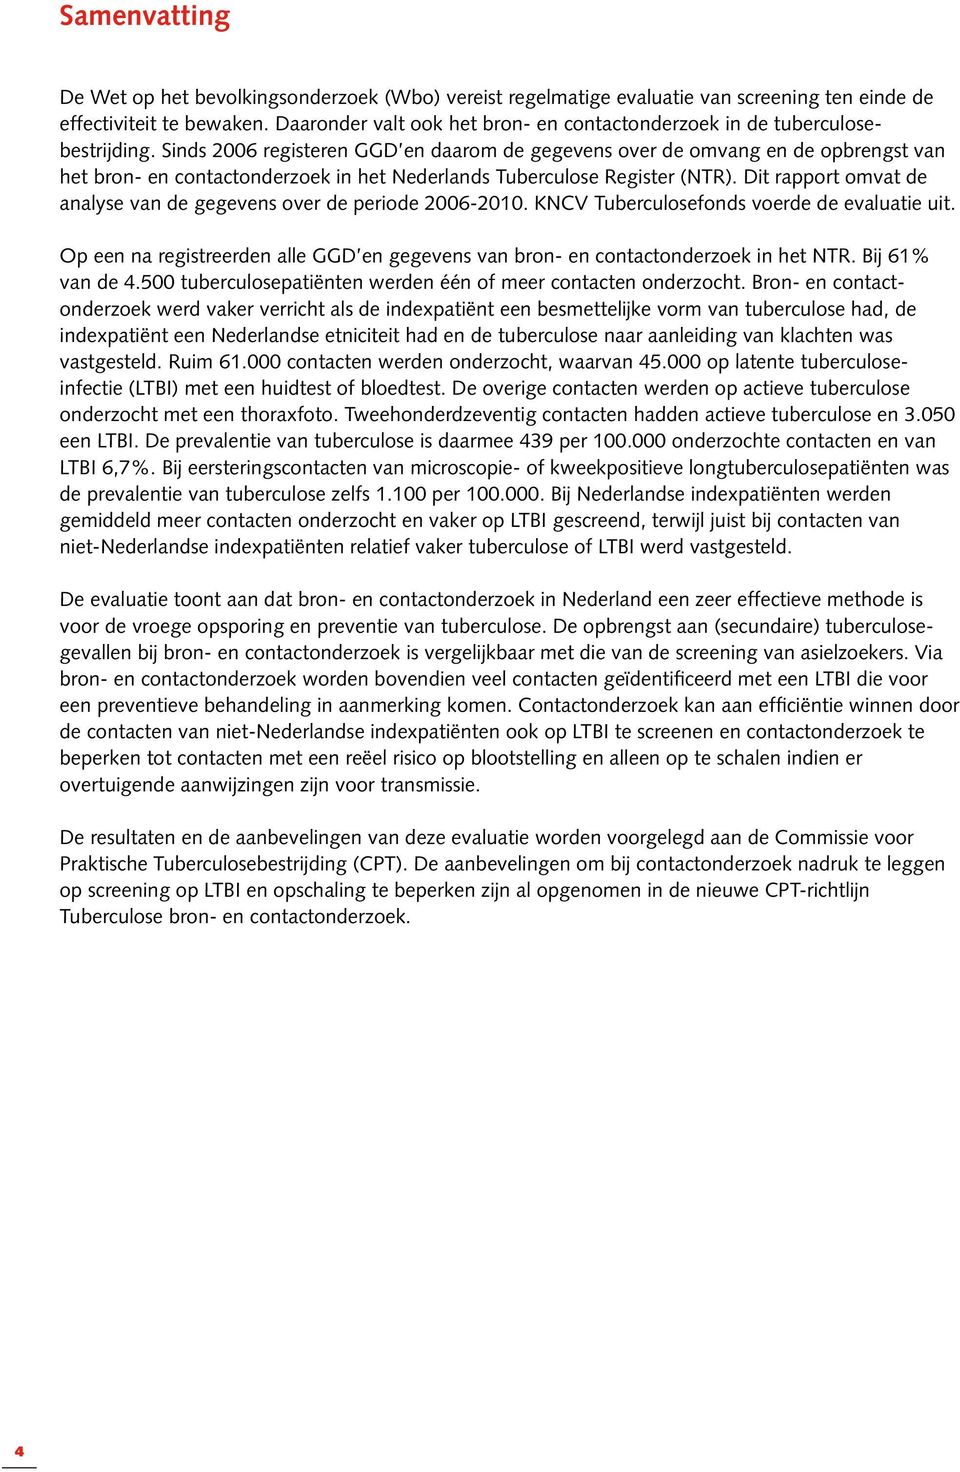 Sinds 2006 registeren GGD en daarom de gegevens over de omvang en de opbrengst van het bron- en contactonderzoek in het Nederlands Tuberculose Register (NTR).